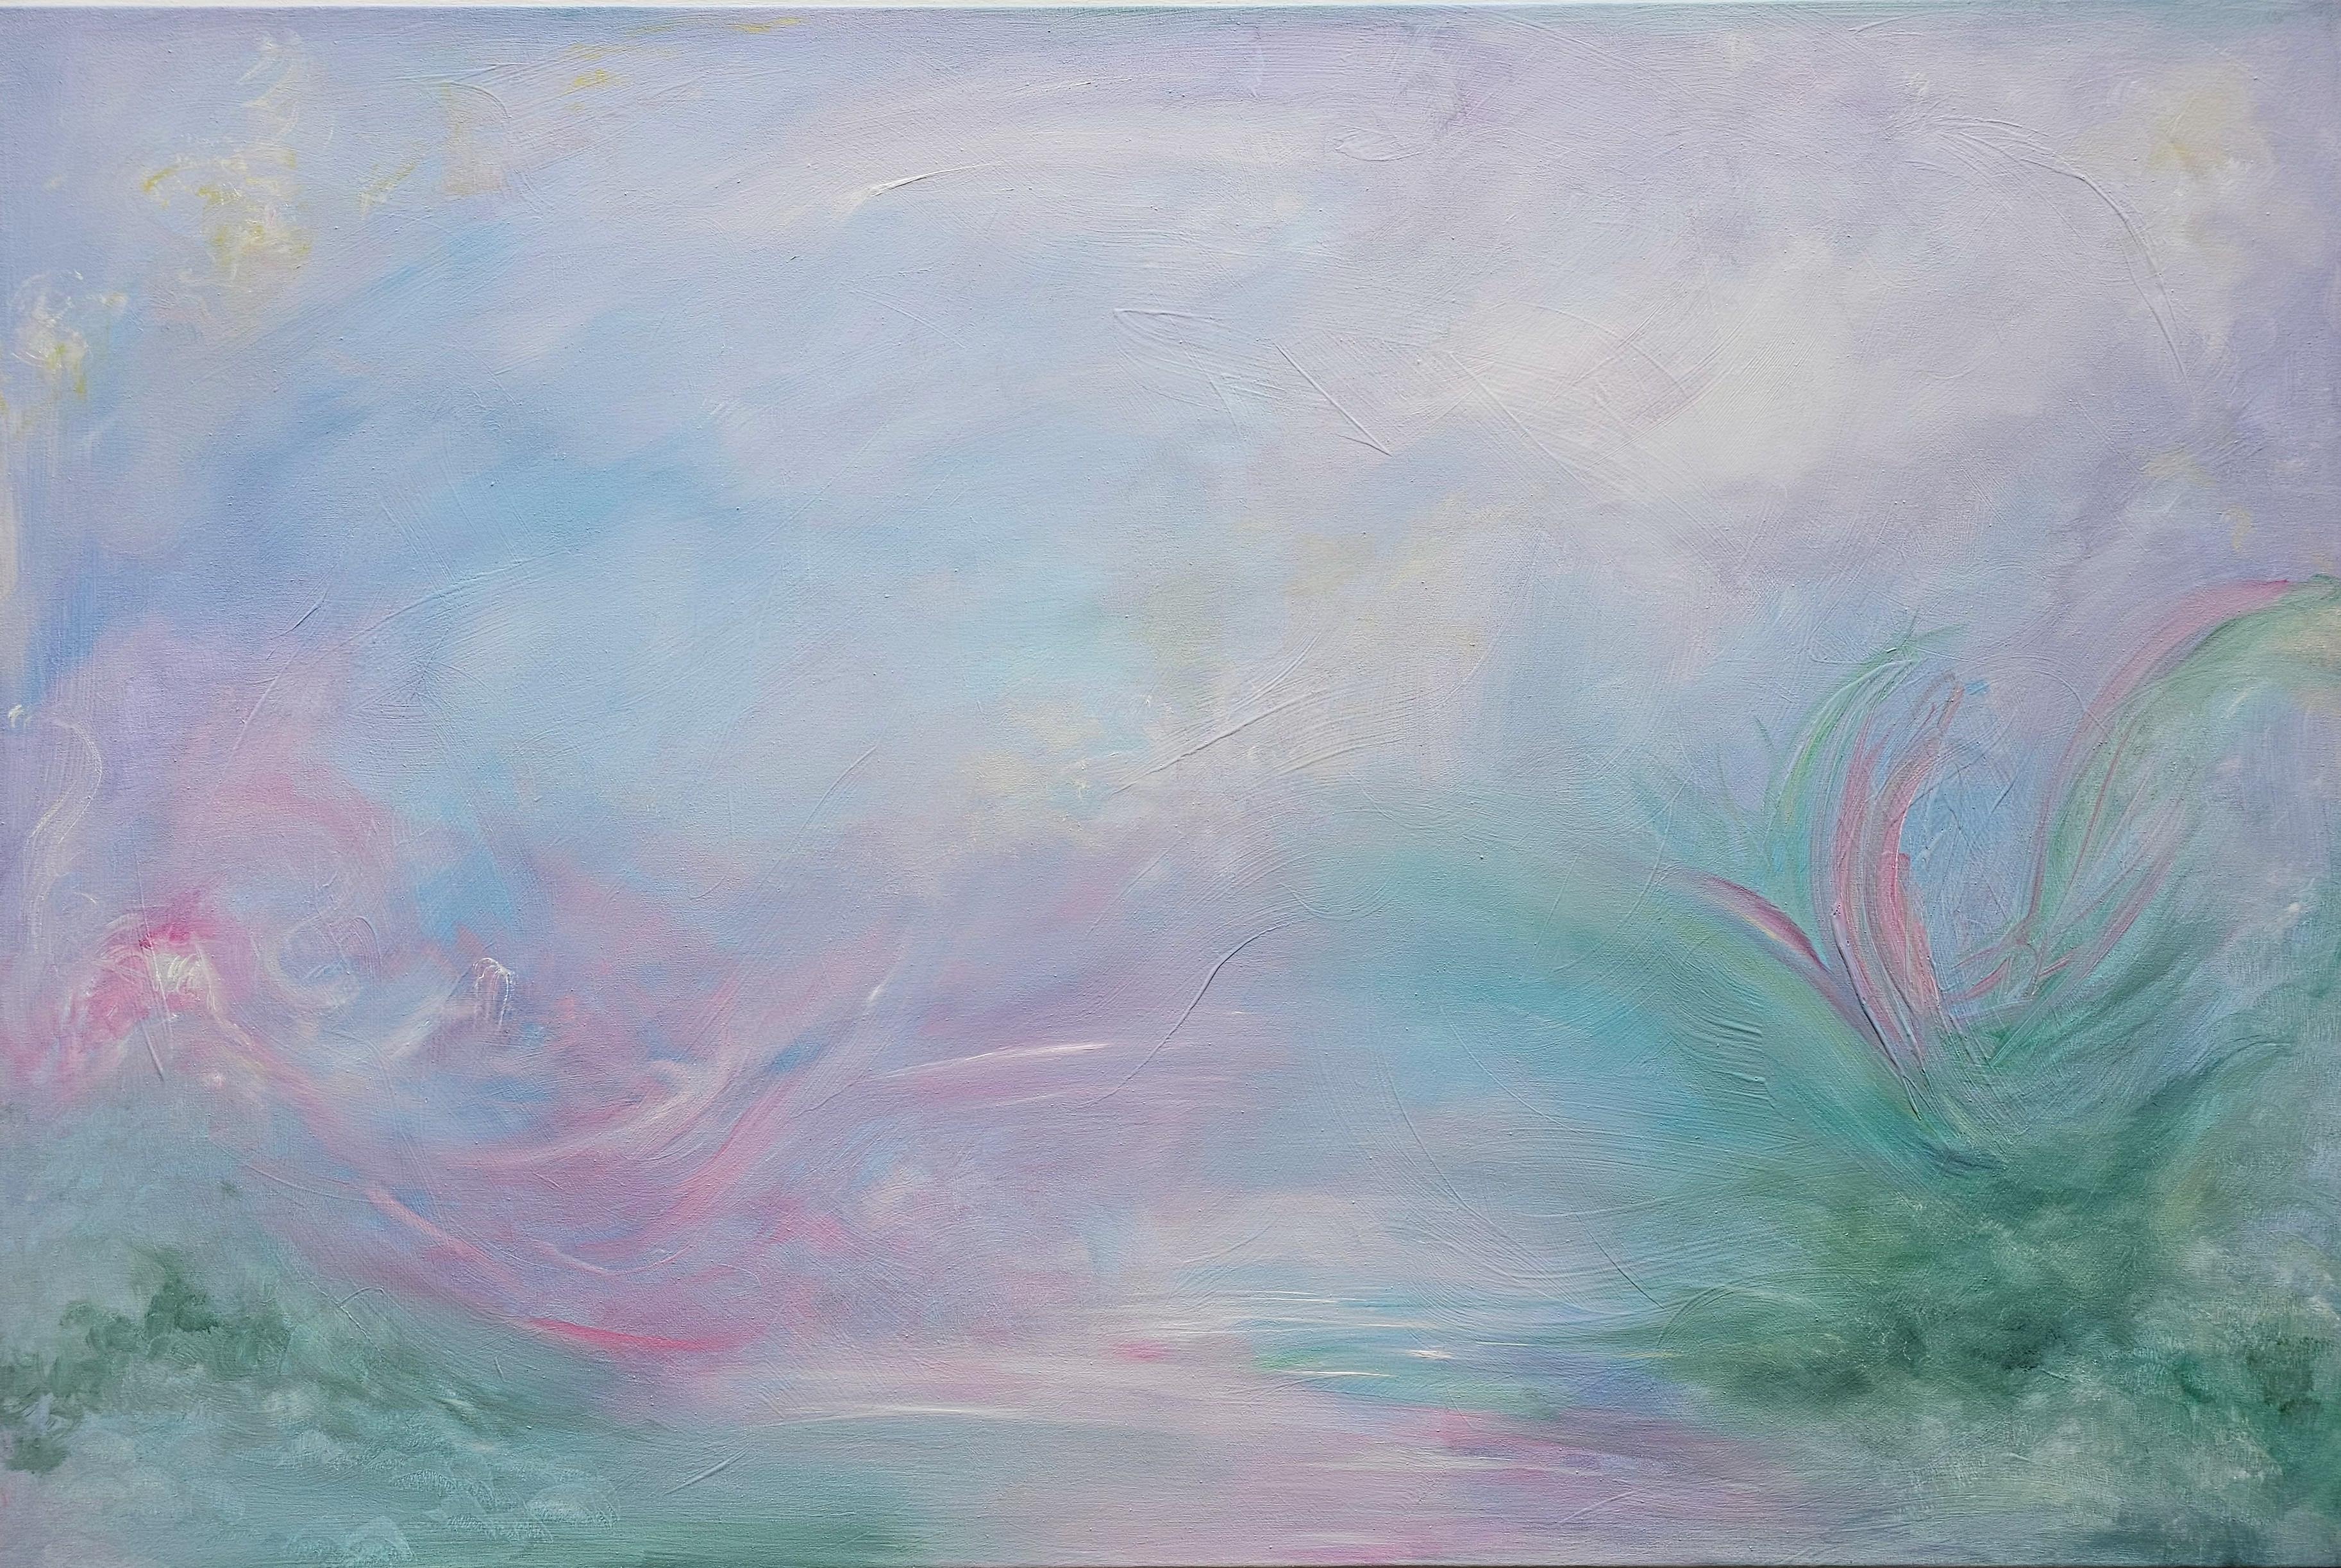 Jennifer L. Baker Landscape Painting - Inner landscape - Soft abstract landscape painting